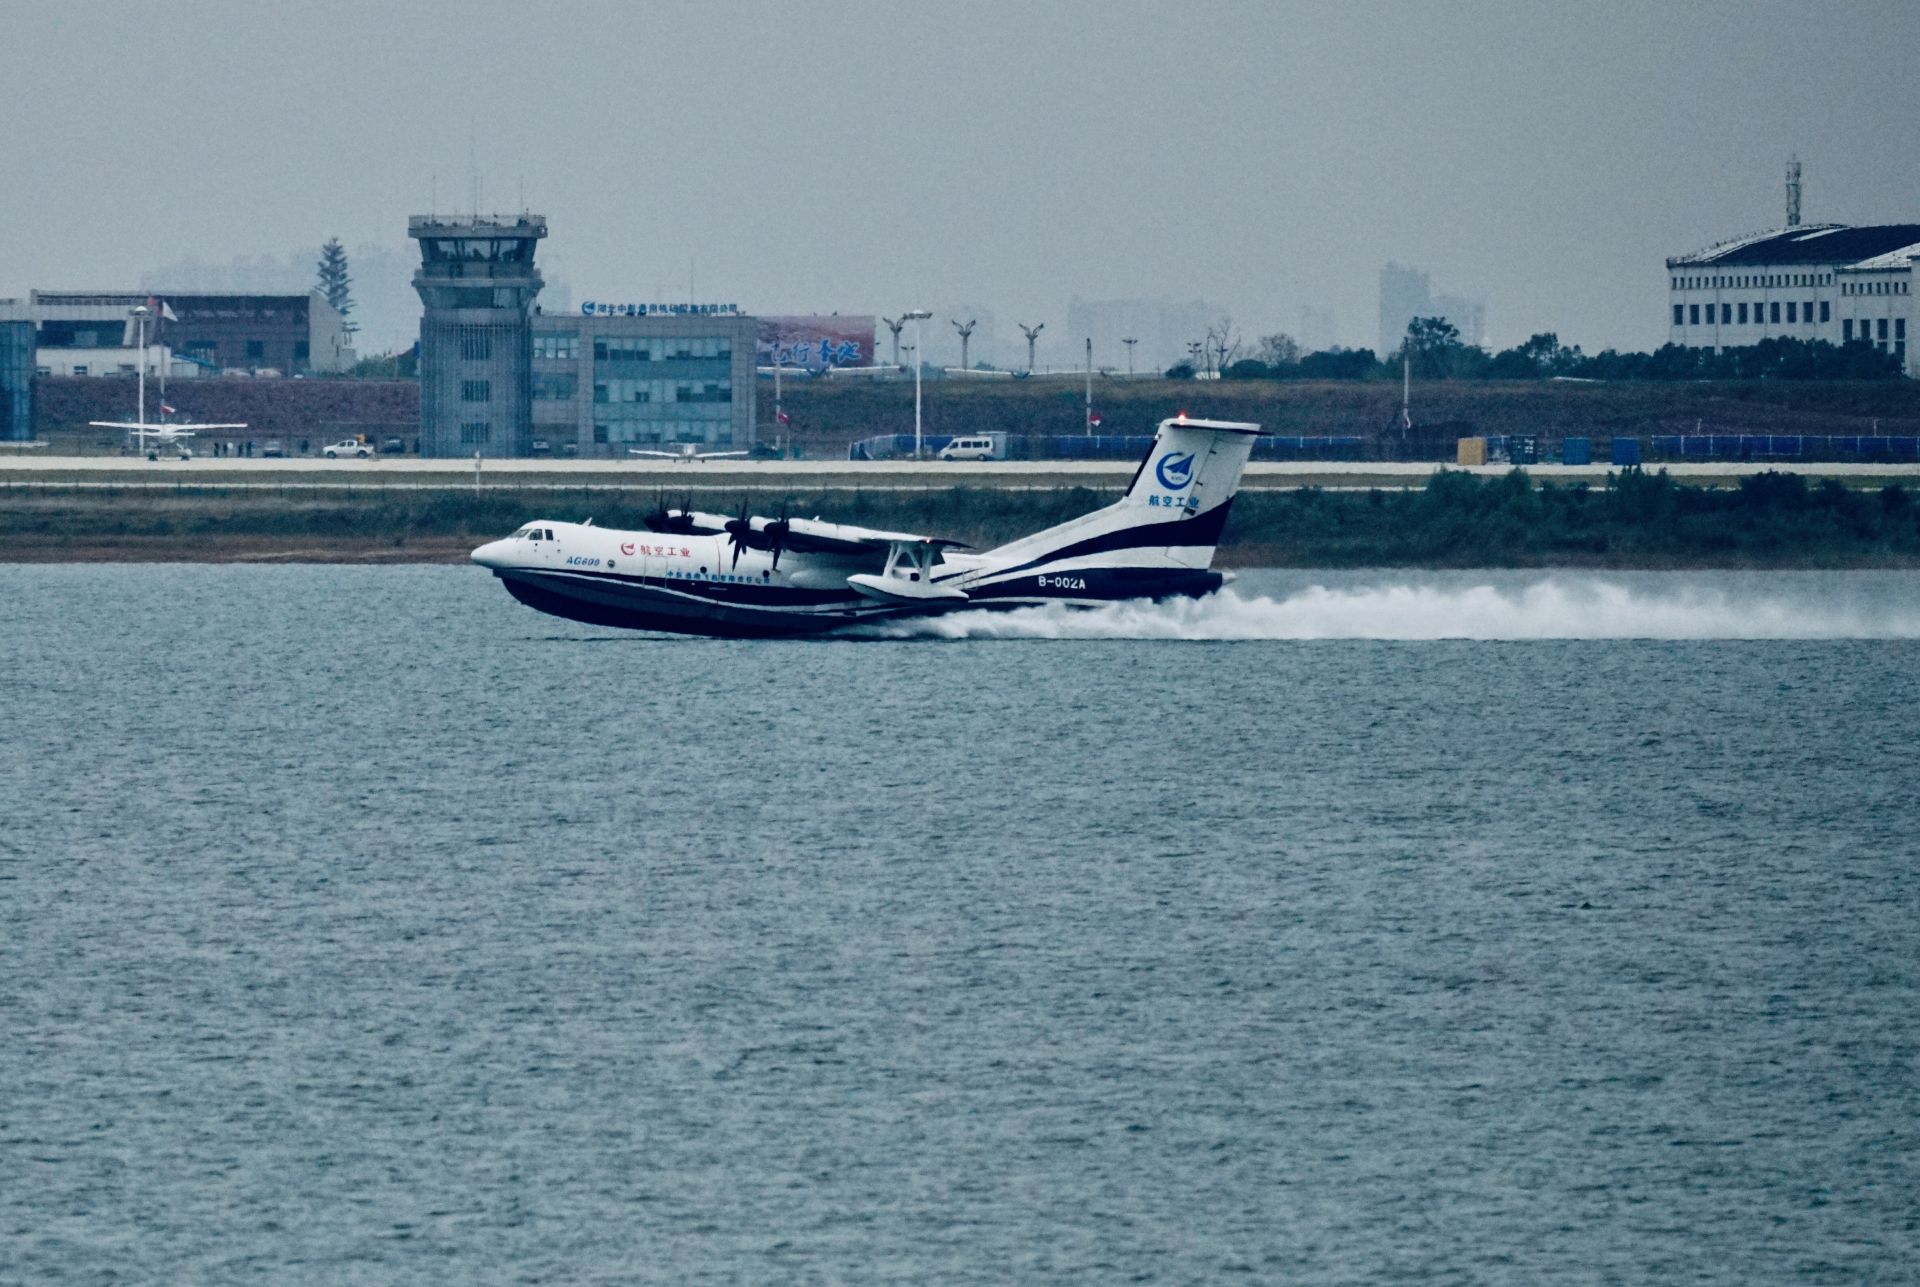 大型水陆两栖飞机鲲龙ag600在荆门成功水上首飞